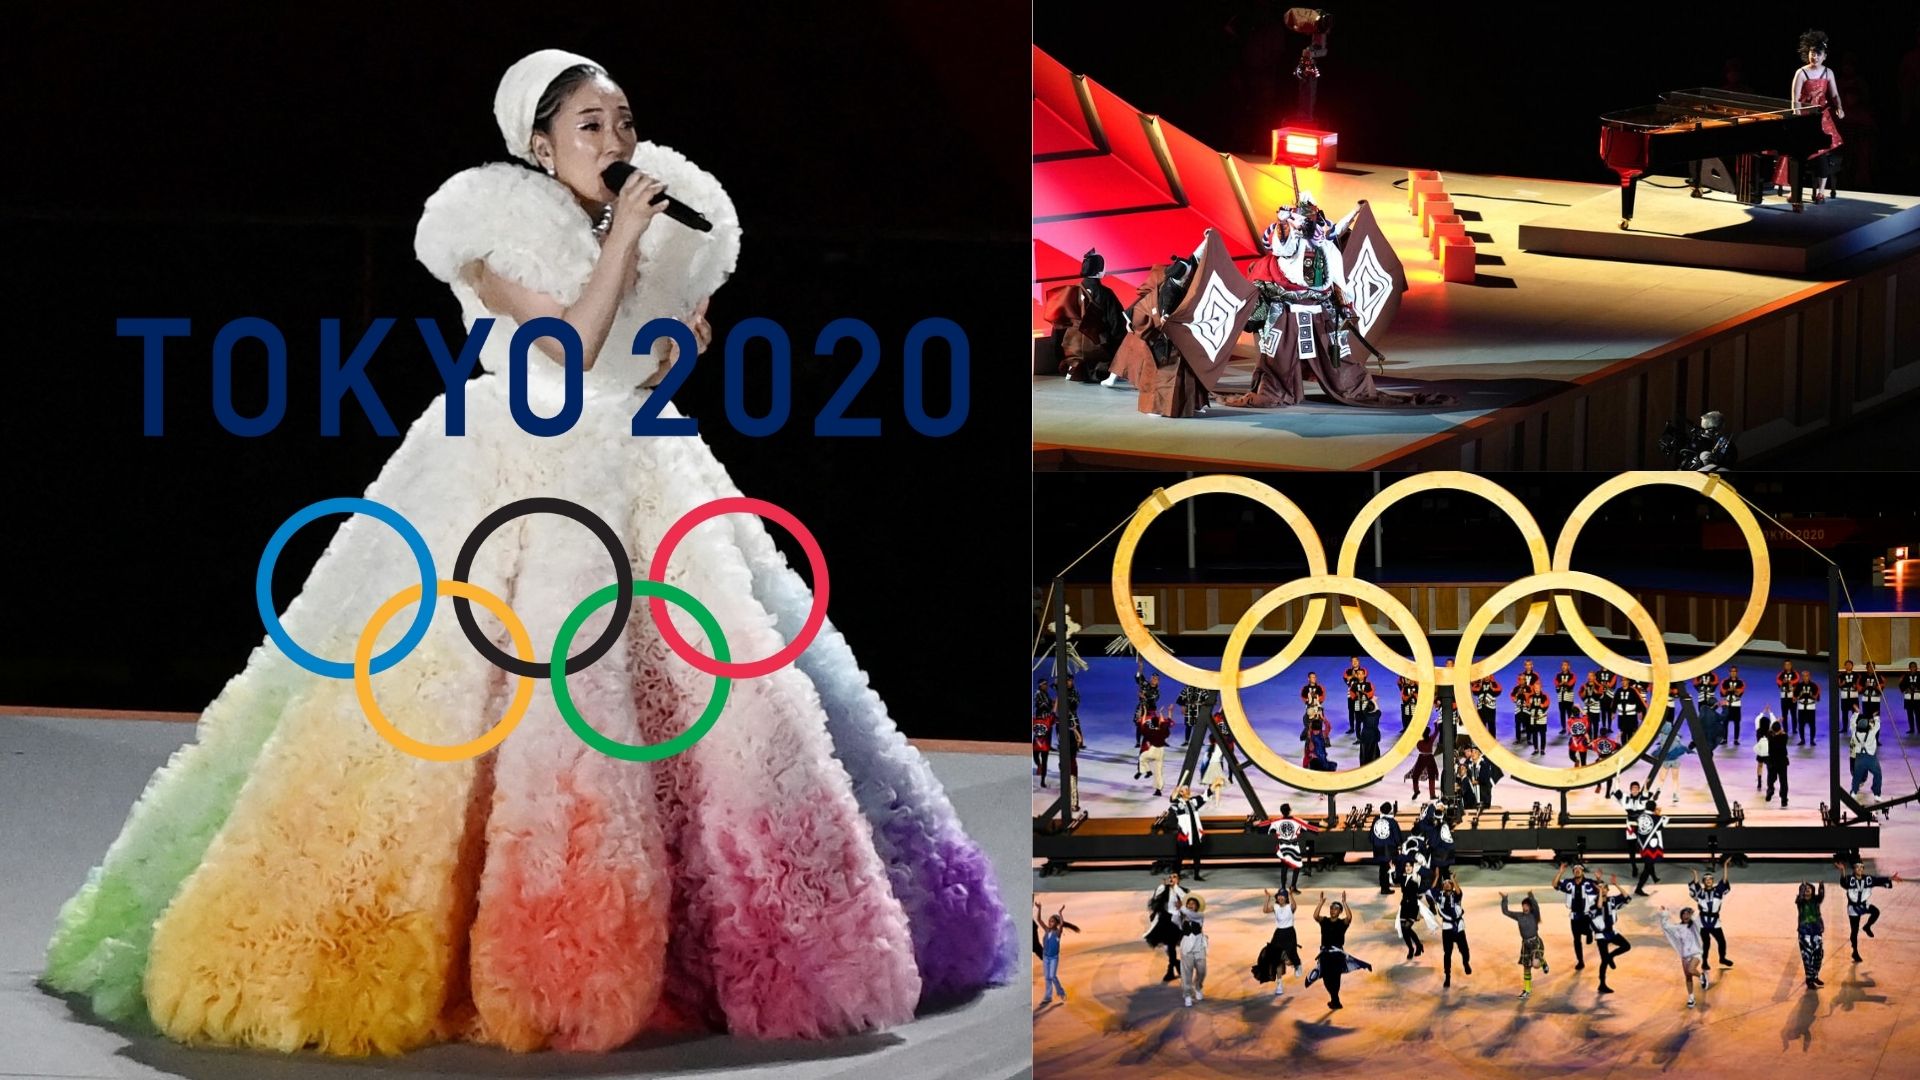 รวมทุกบทเพลงในพิธีเปิดการแข่งขันกีฬาโอลิมปิกโตเกียว 2020